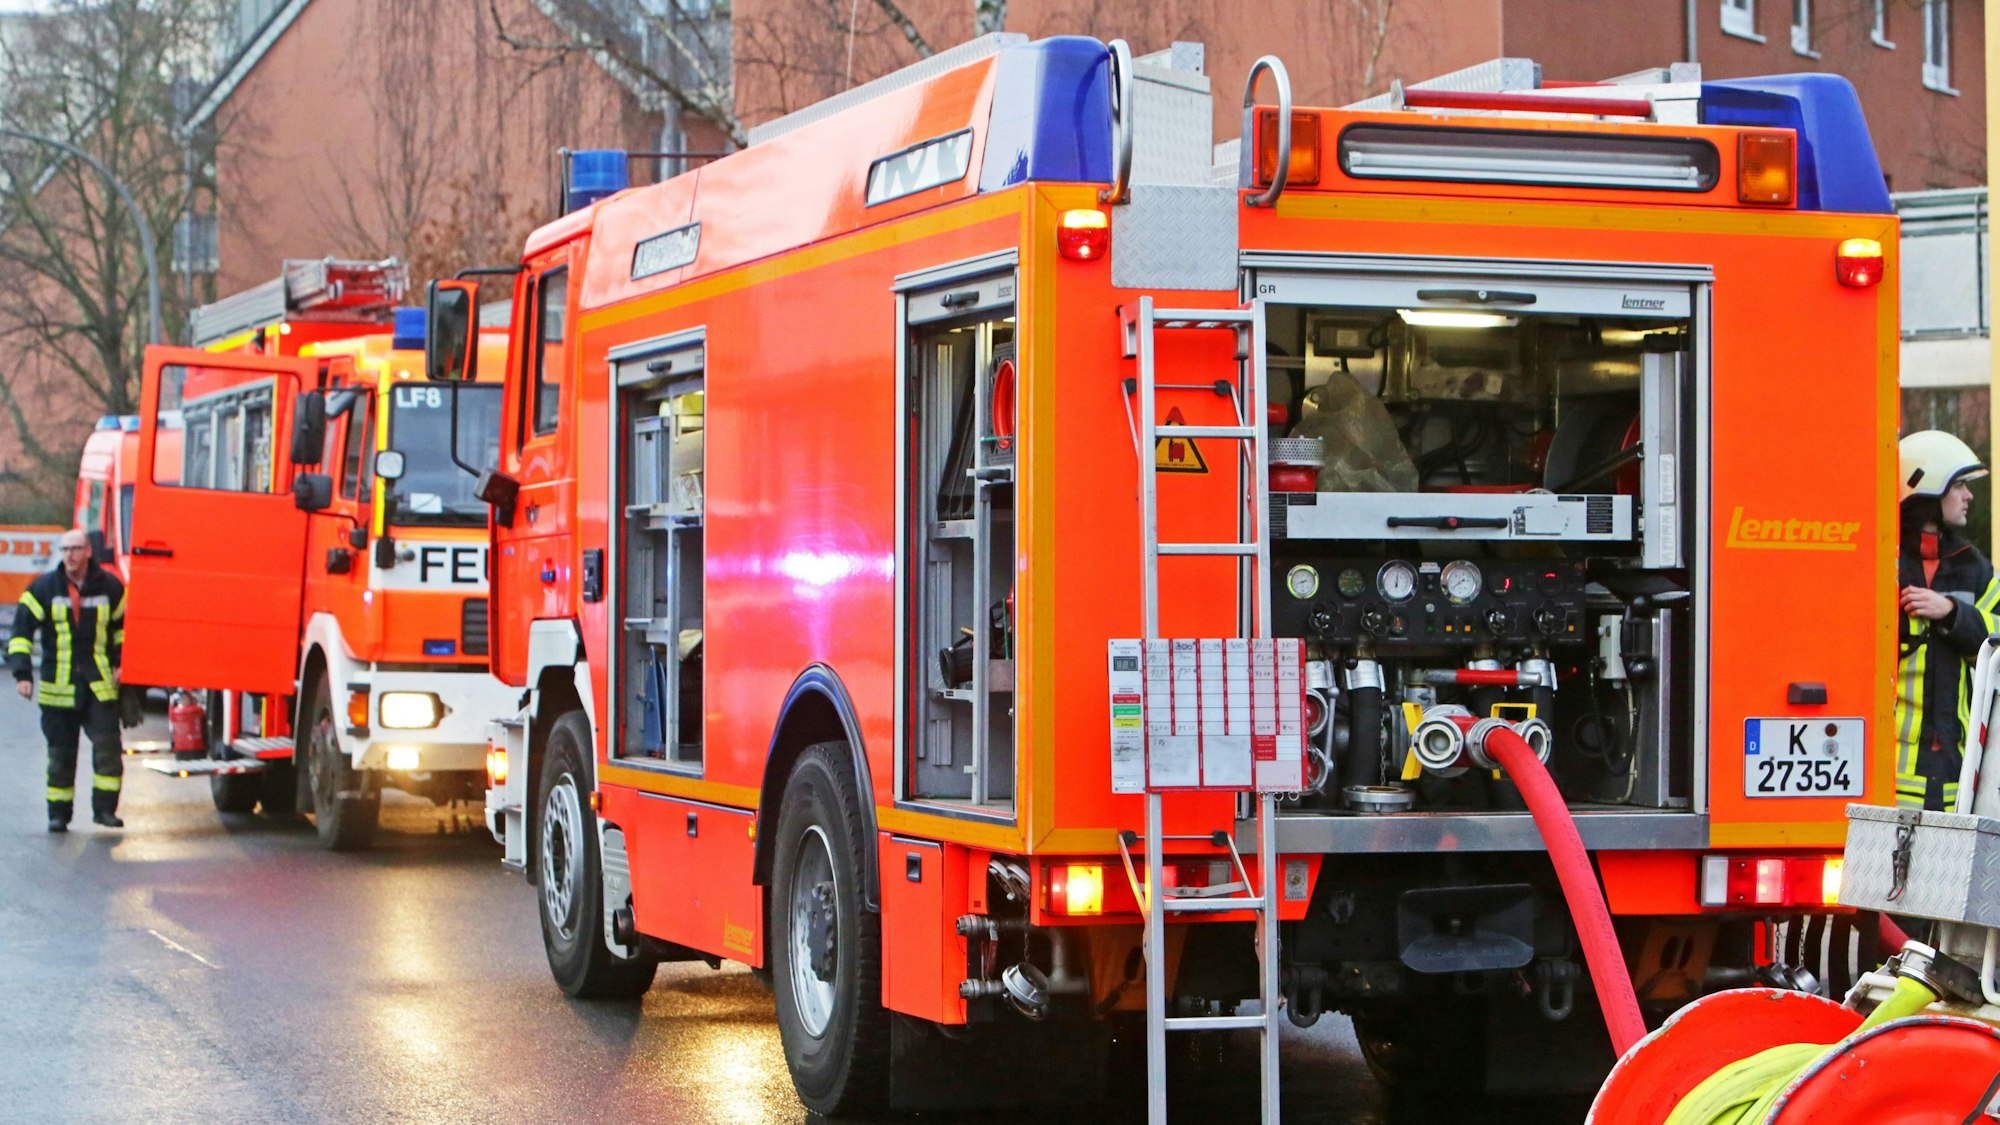 Die Kölner Feuerwehr rückt bei Brandstiftung aus (Symbolbild). Zwei Einsatzfahrzeuge stehen auf der Straße mit zwei Feuerwehrmännern.